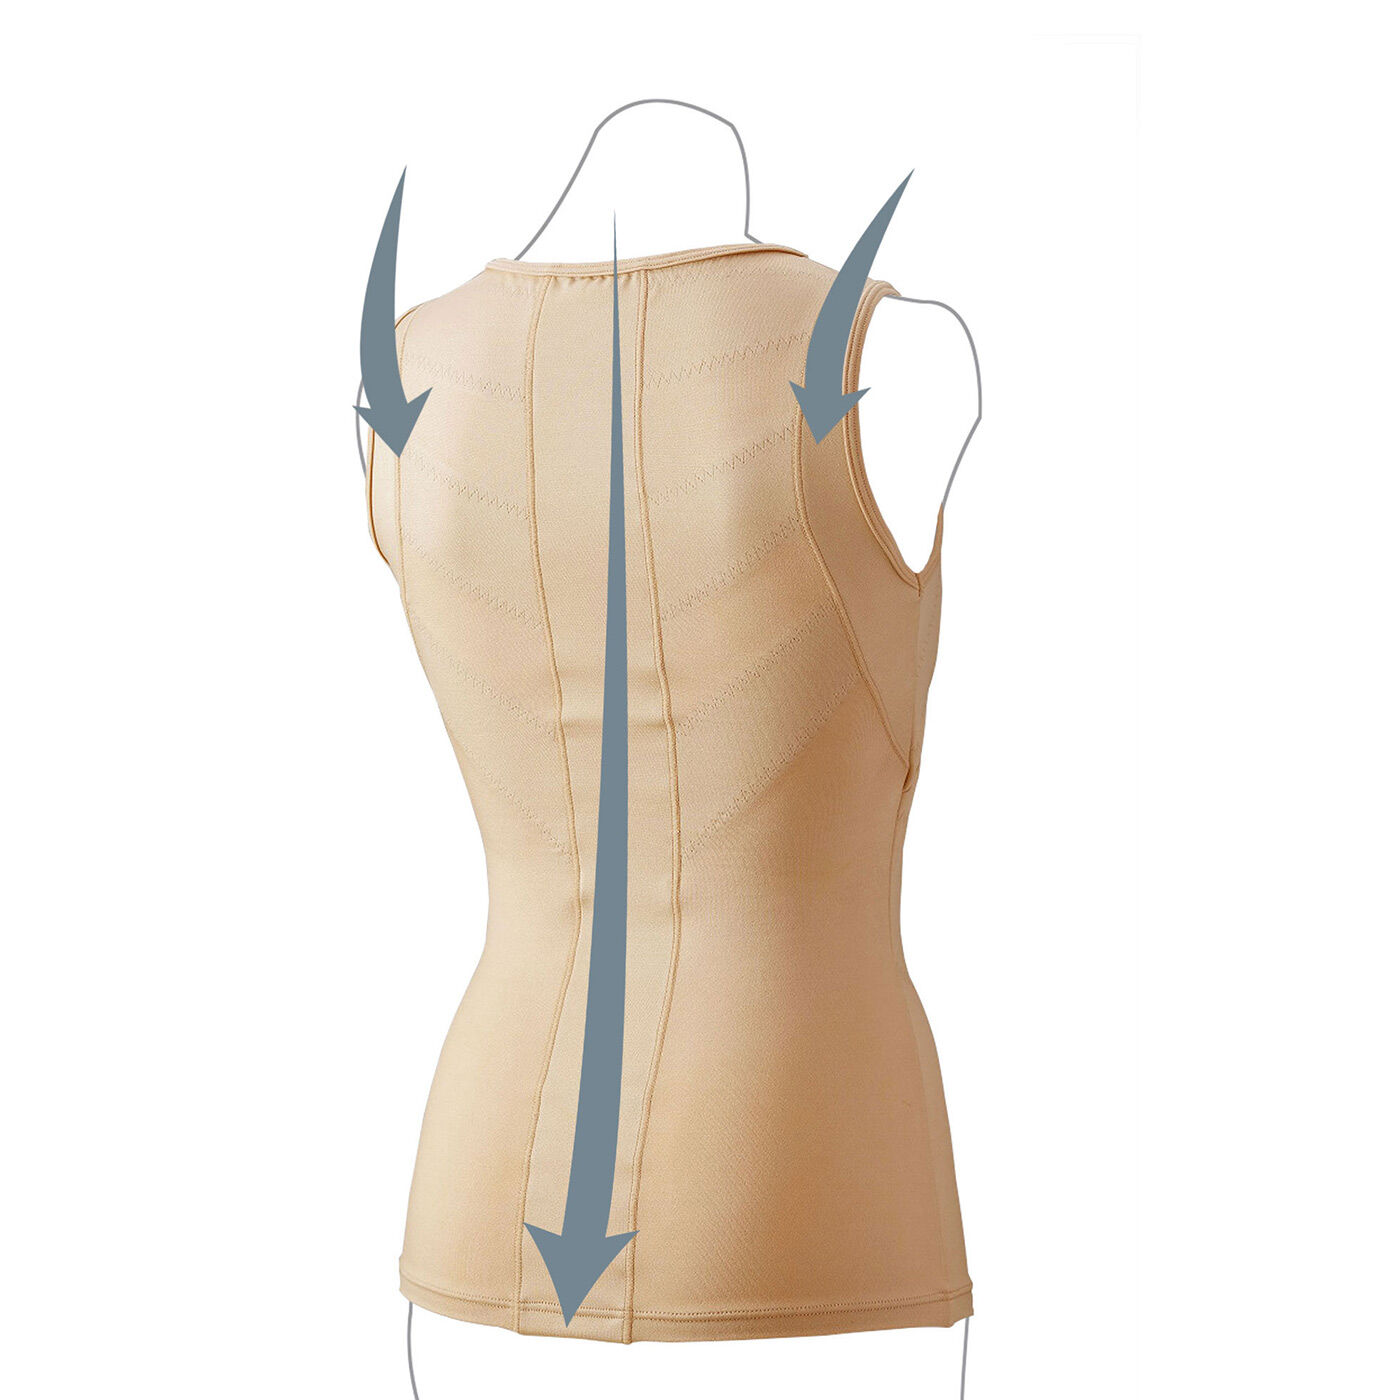 フラフィール|Dr.小倉の肩甲骨姿勢トップス〈ベージュ〉|肩甲骨を引き寄せ、背筋を伸ばすように当て布を配置。